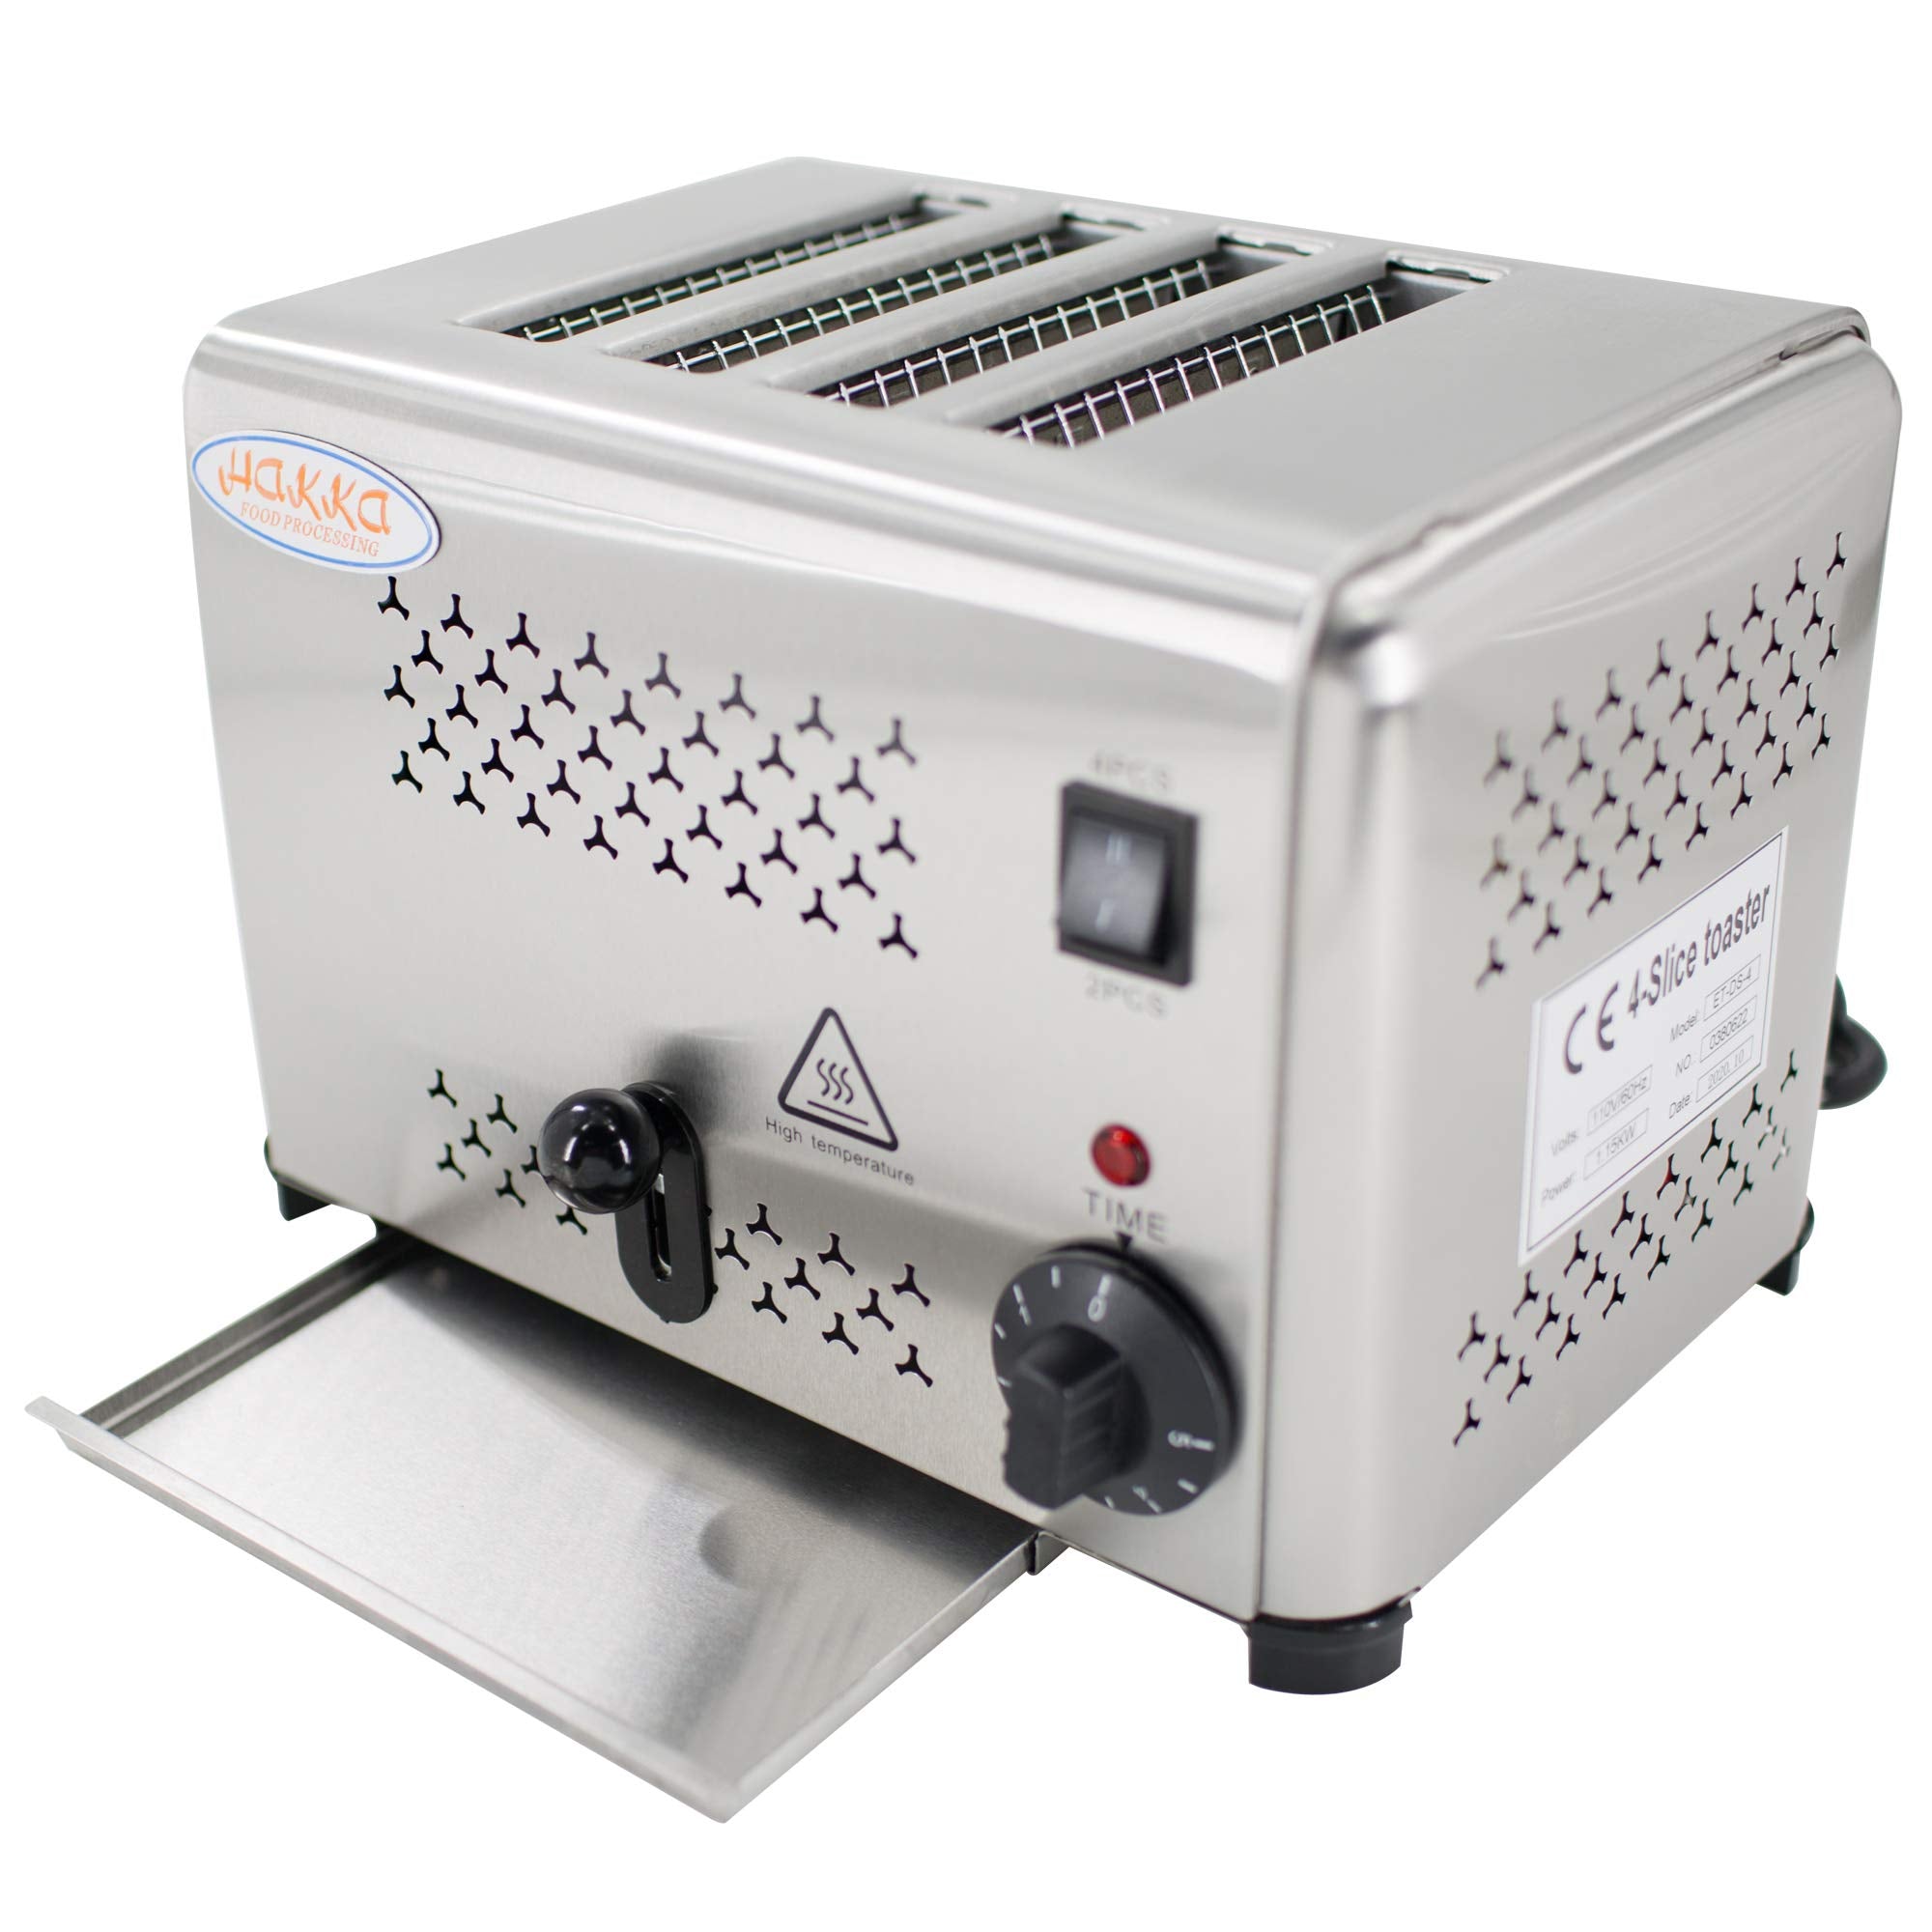 Hakka Heavy-Duty Switchable Bread 4-Slice Commercial Toaster